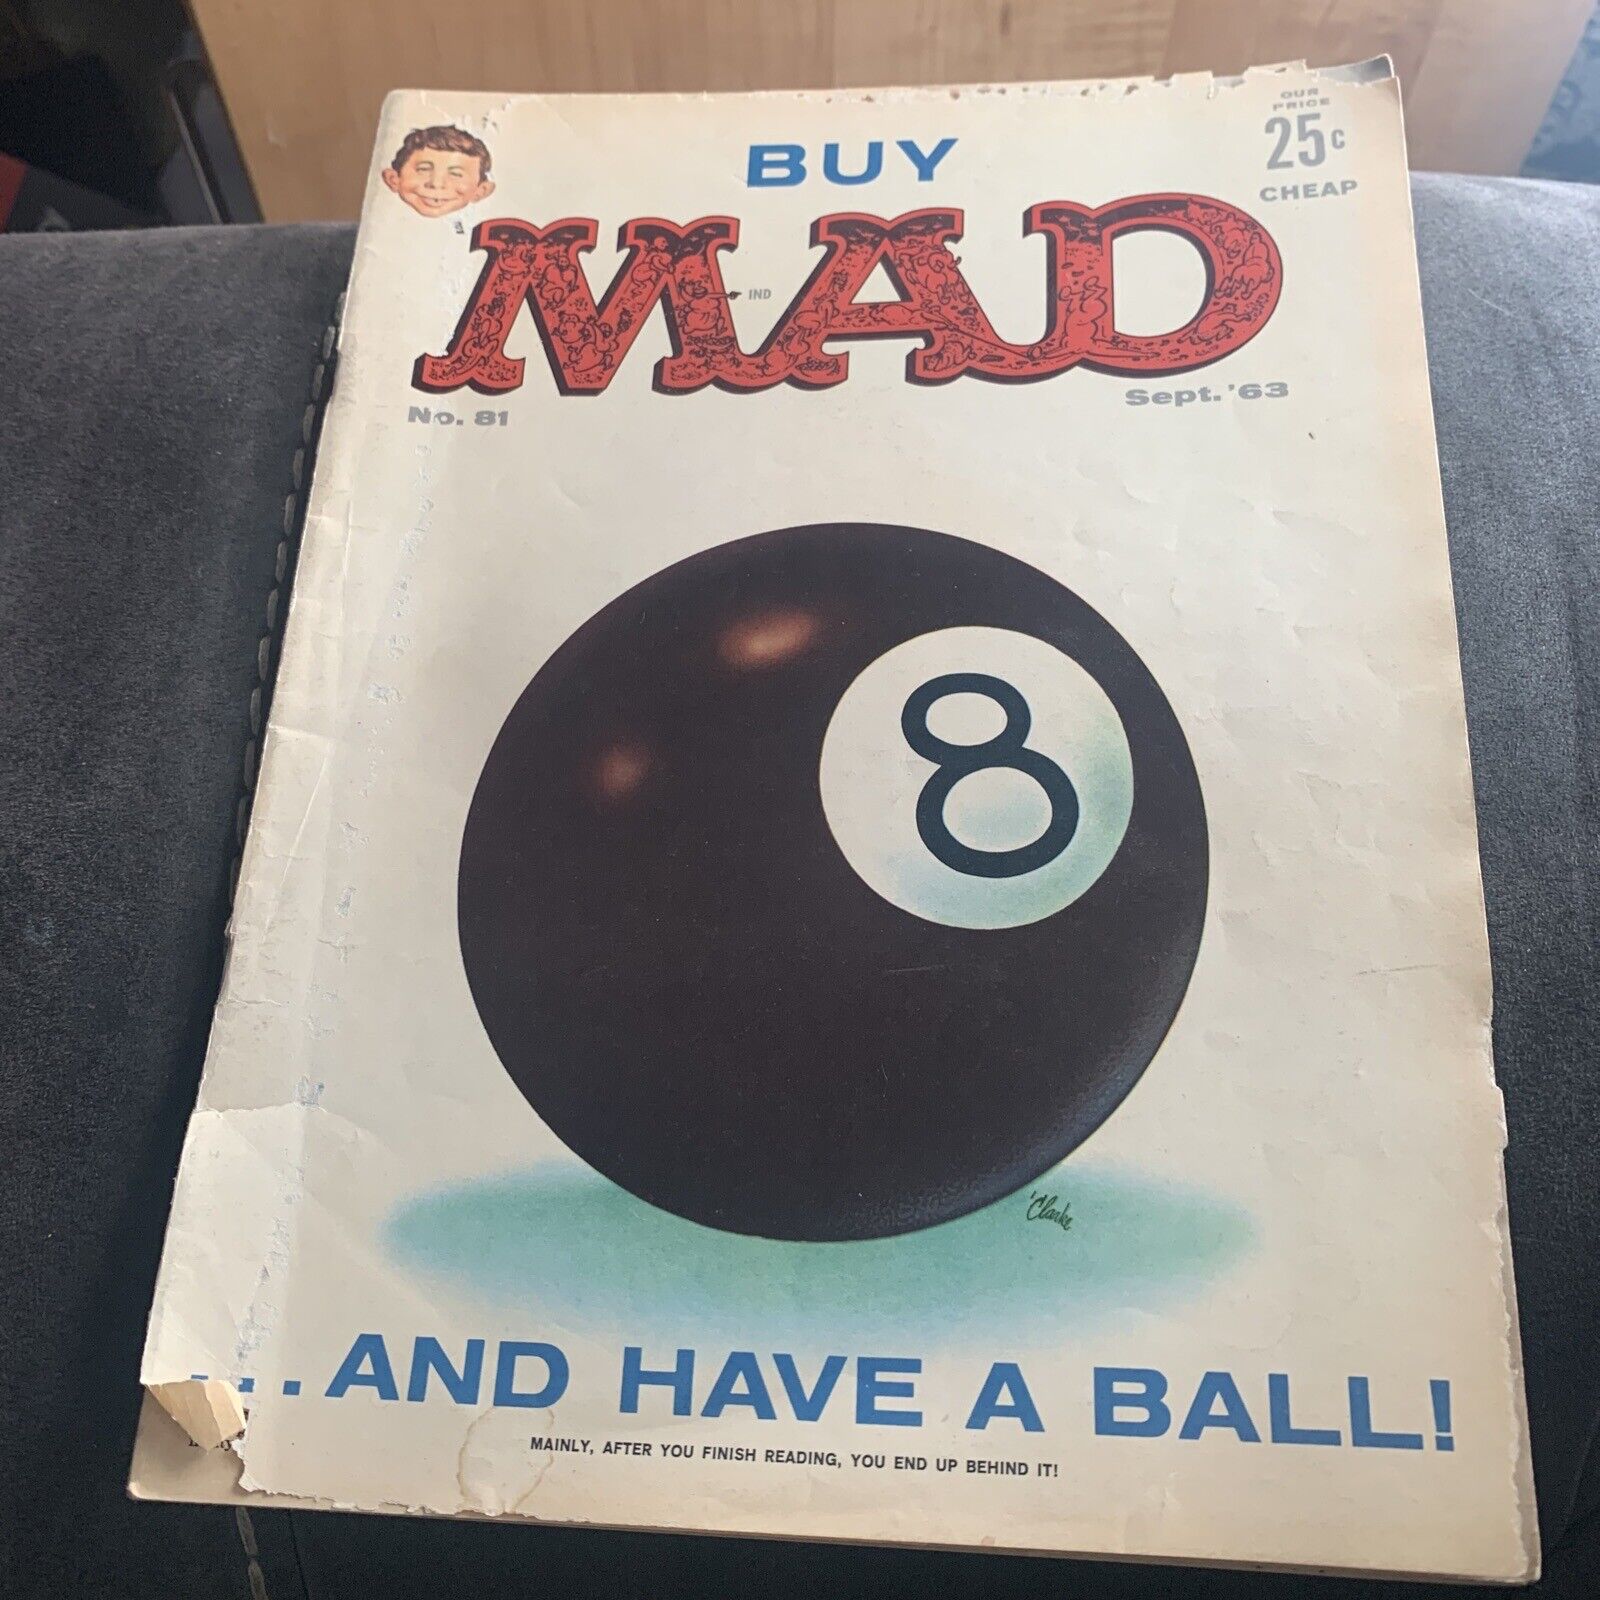 Mad Magazine September 1963